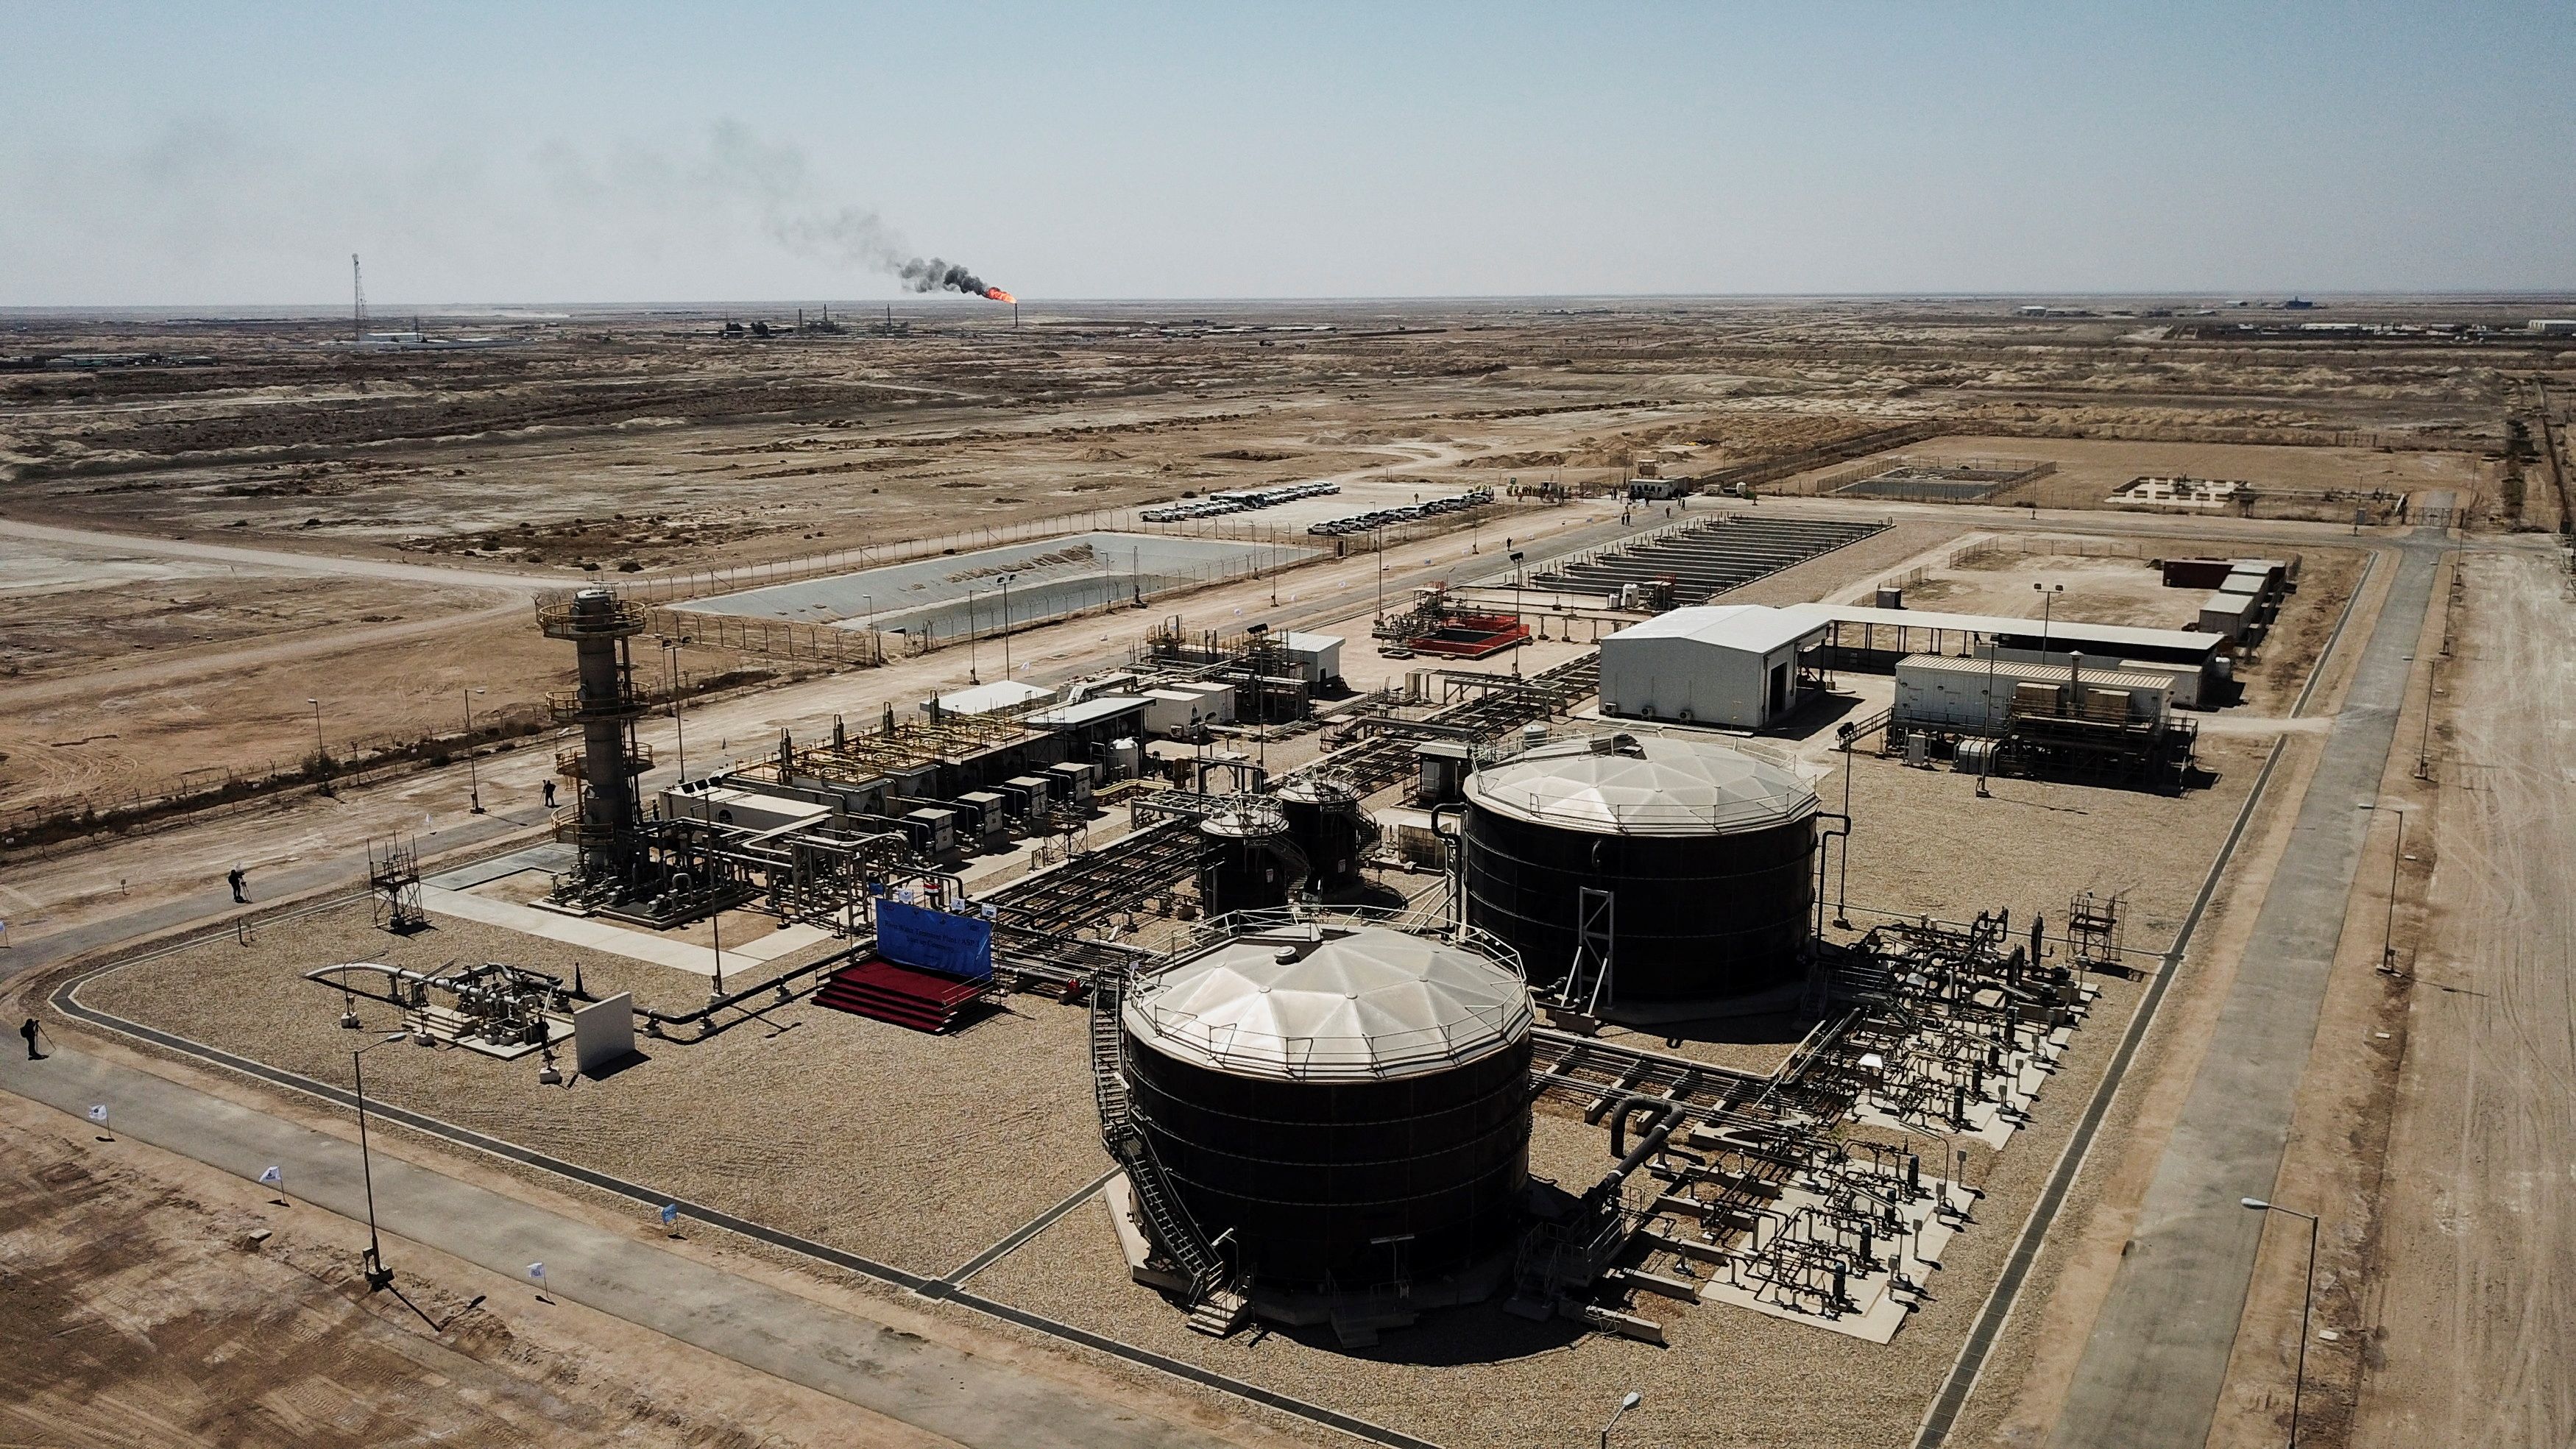 A view shows Iraq's Majnoon oil field near Basra